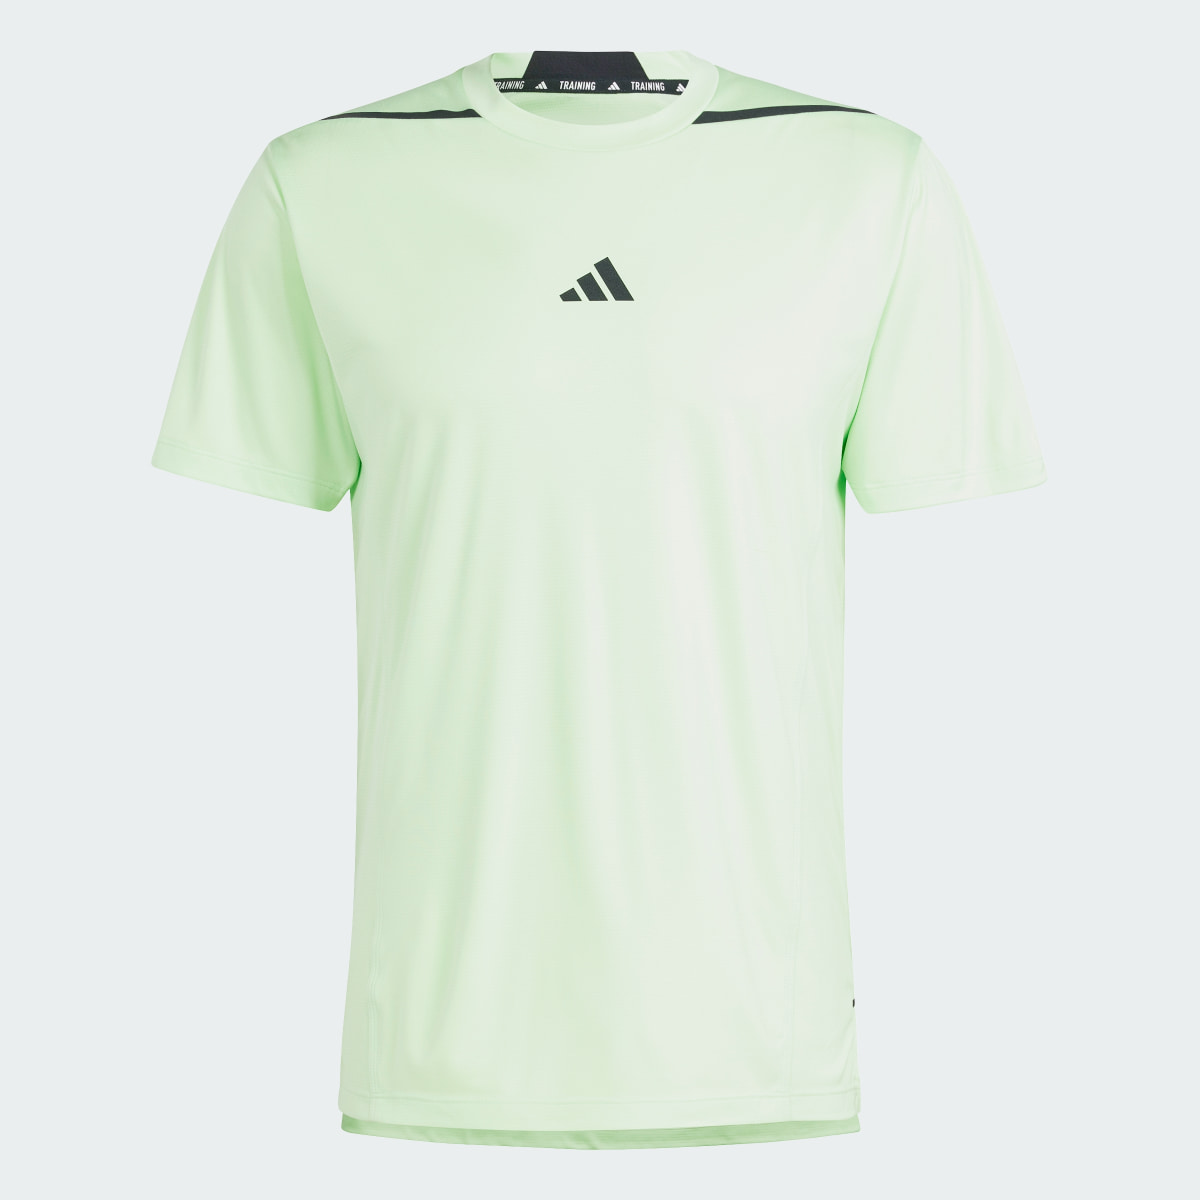 Adidas T-shirt de Treino Adistrong Designed for Training. 5